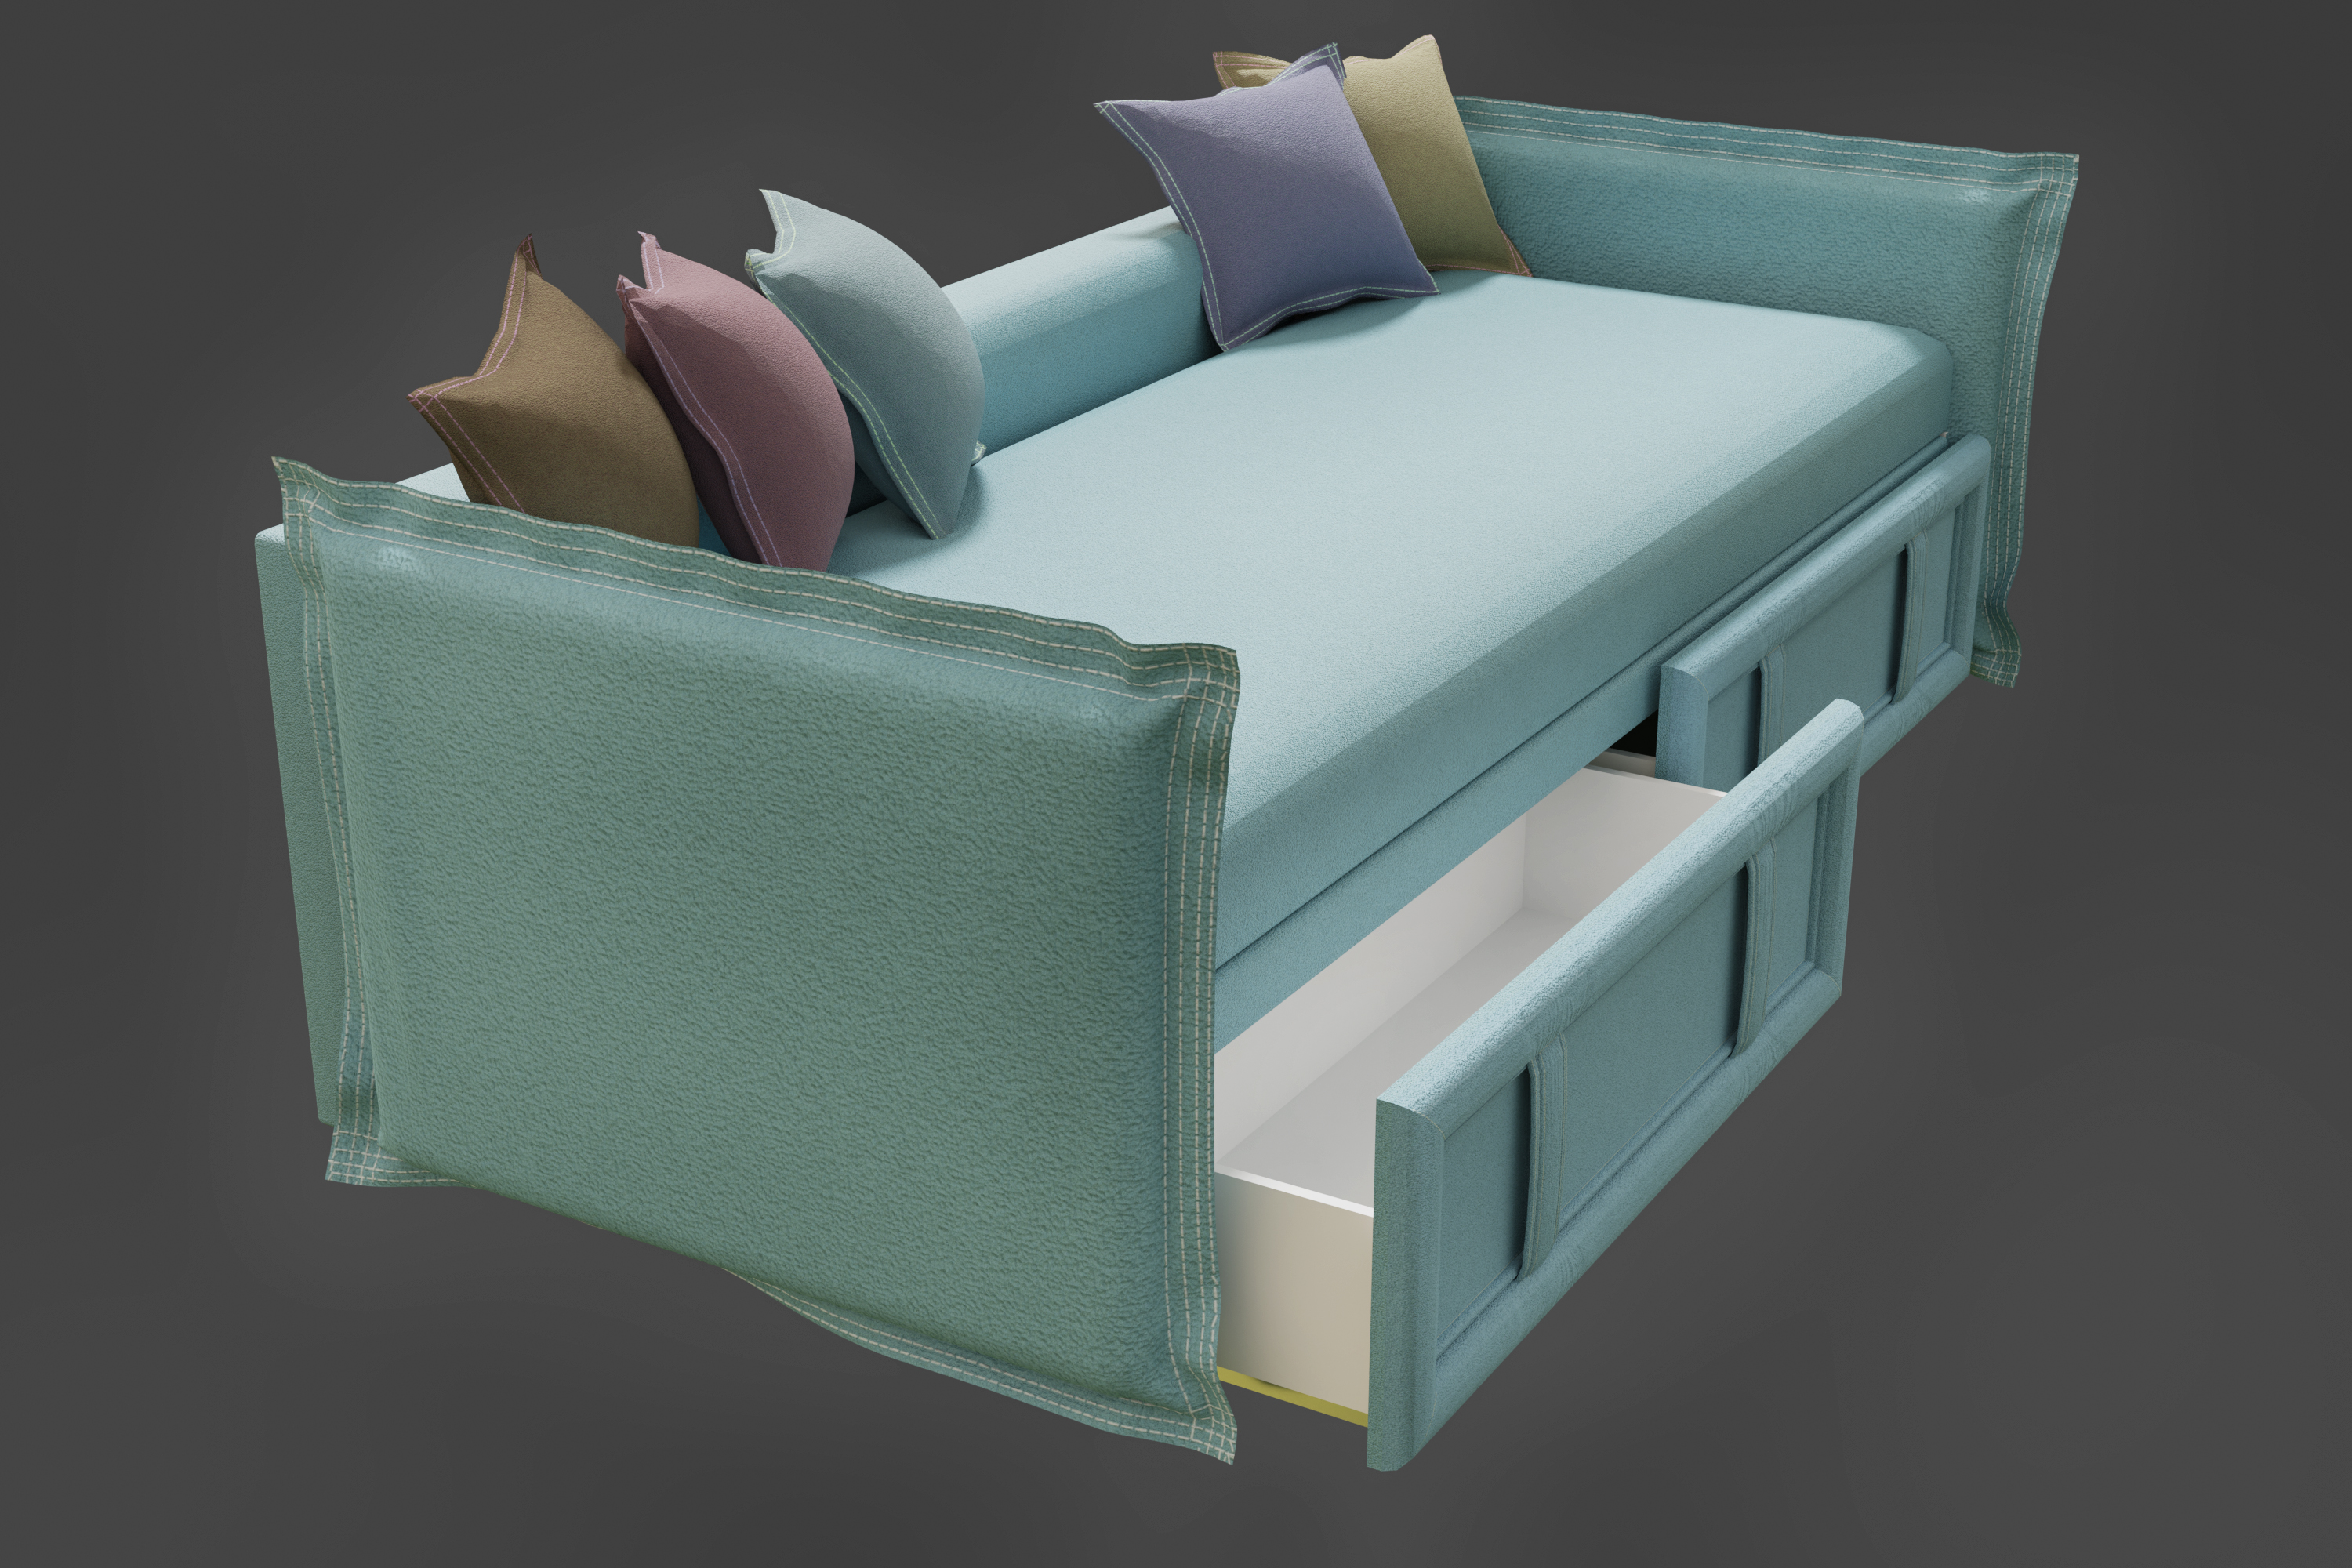 Sofa in Blender cycles render Bild